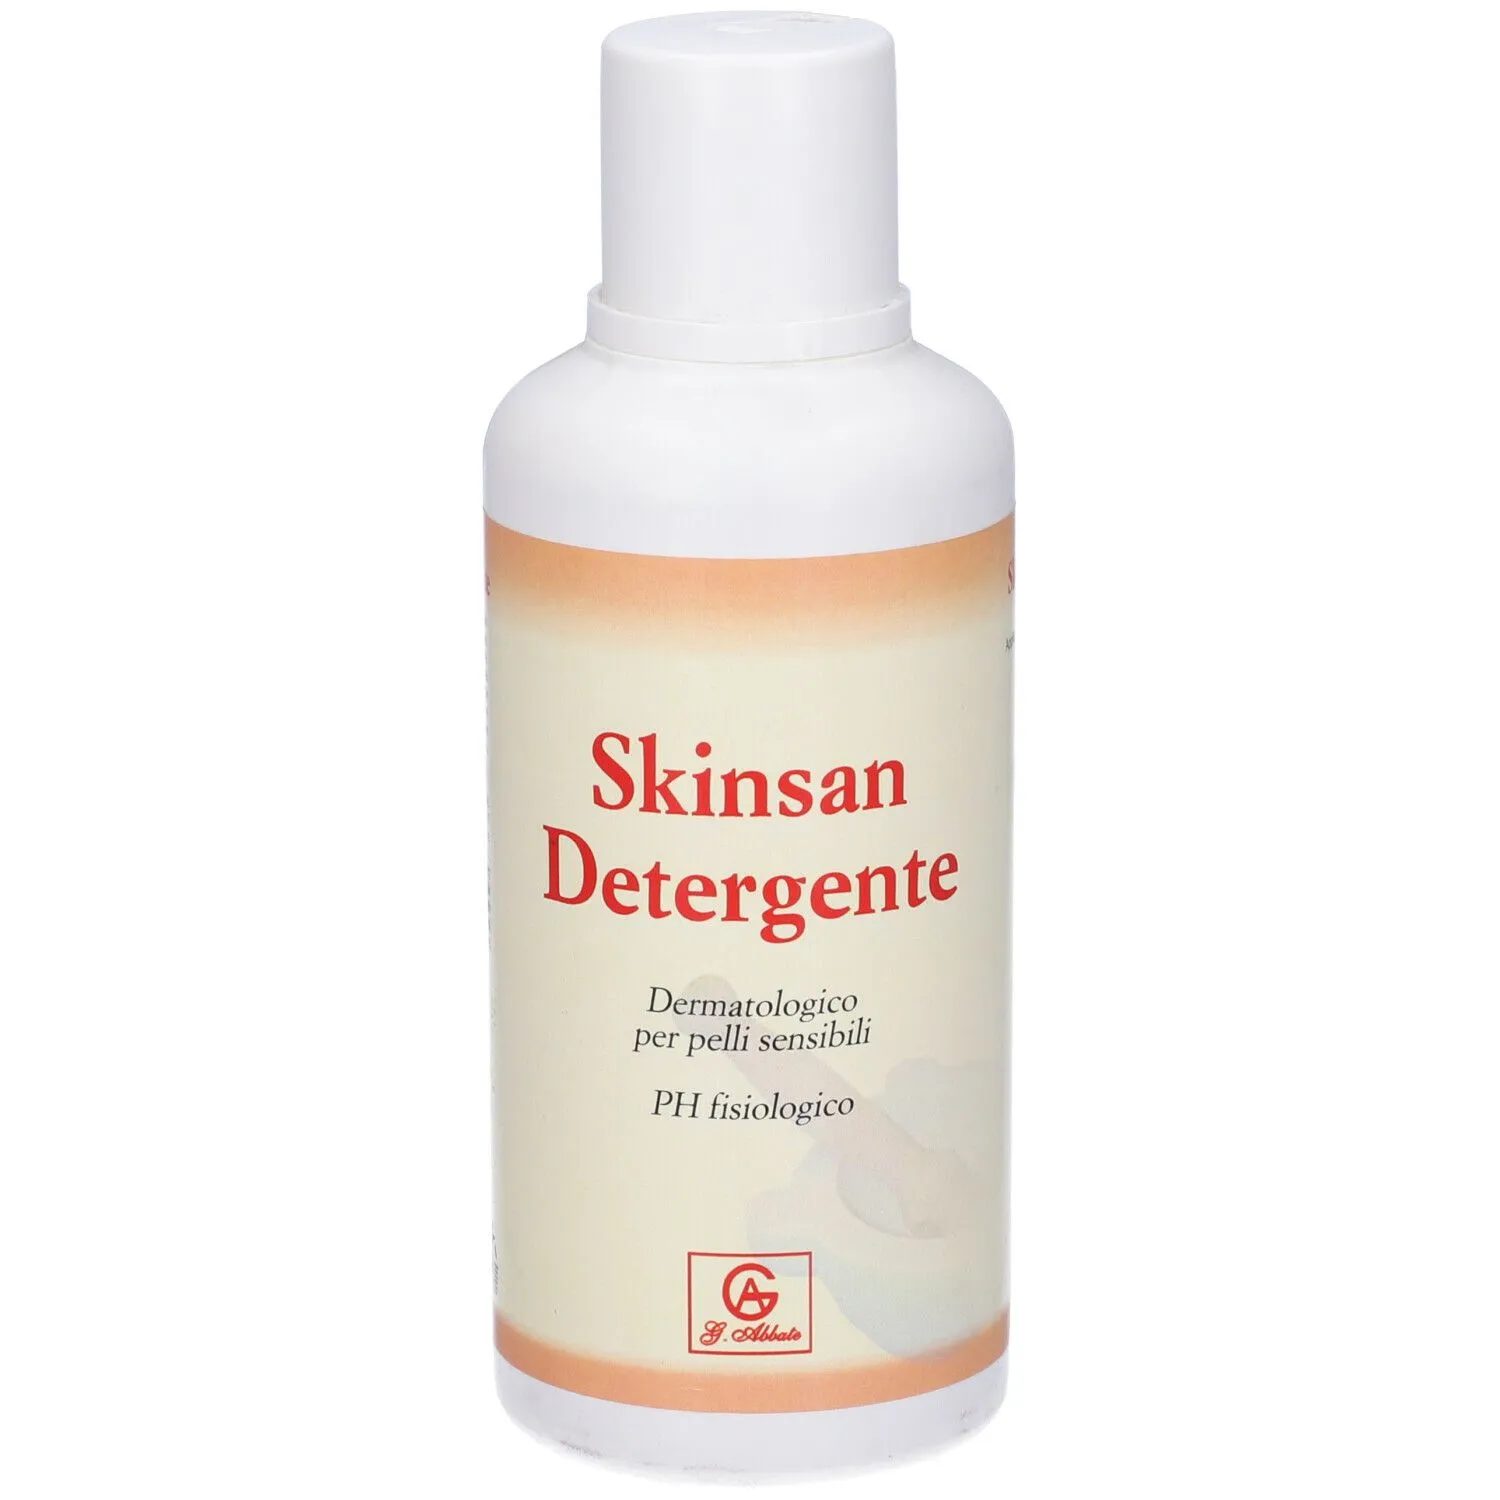 Skinsan Detergente Dermatologico